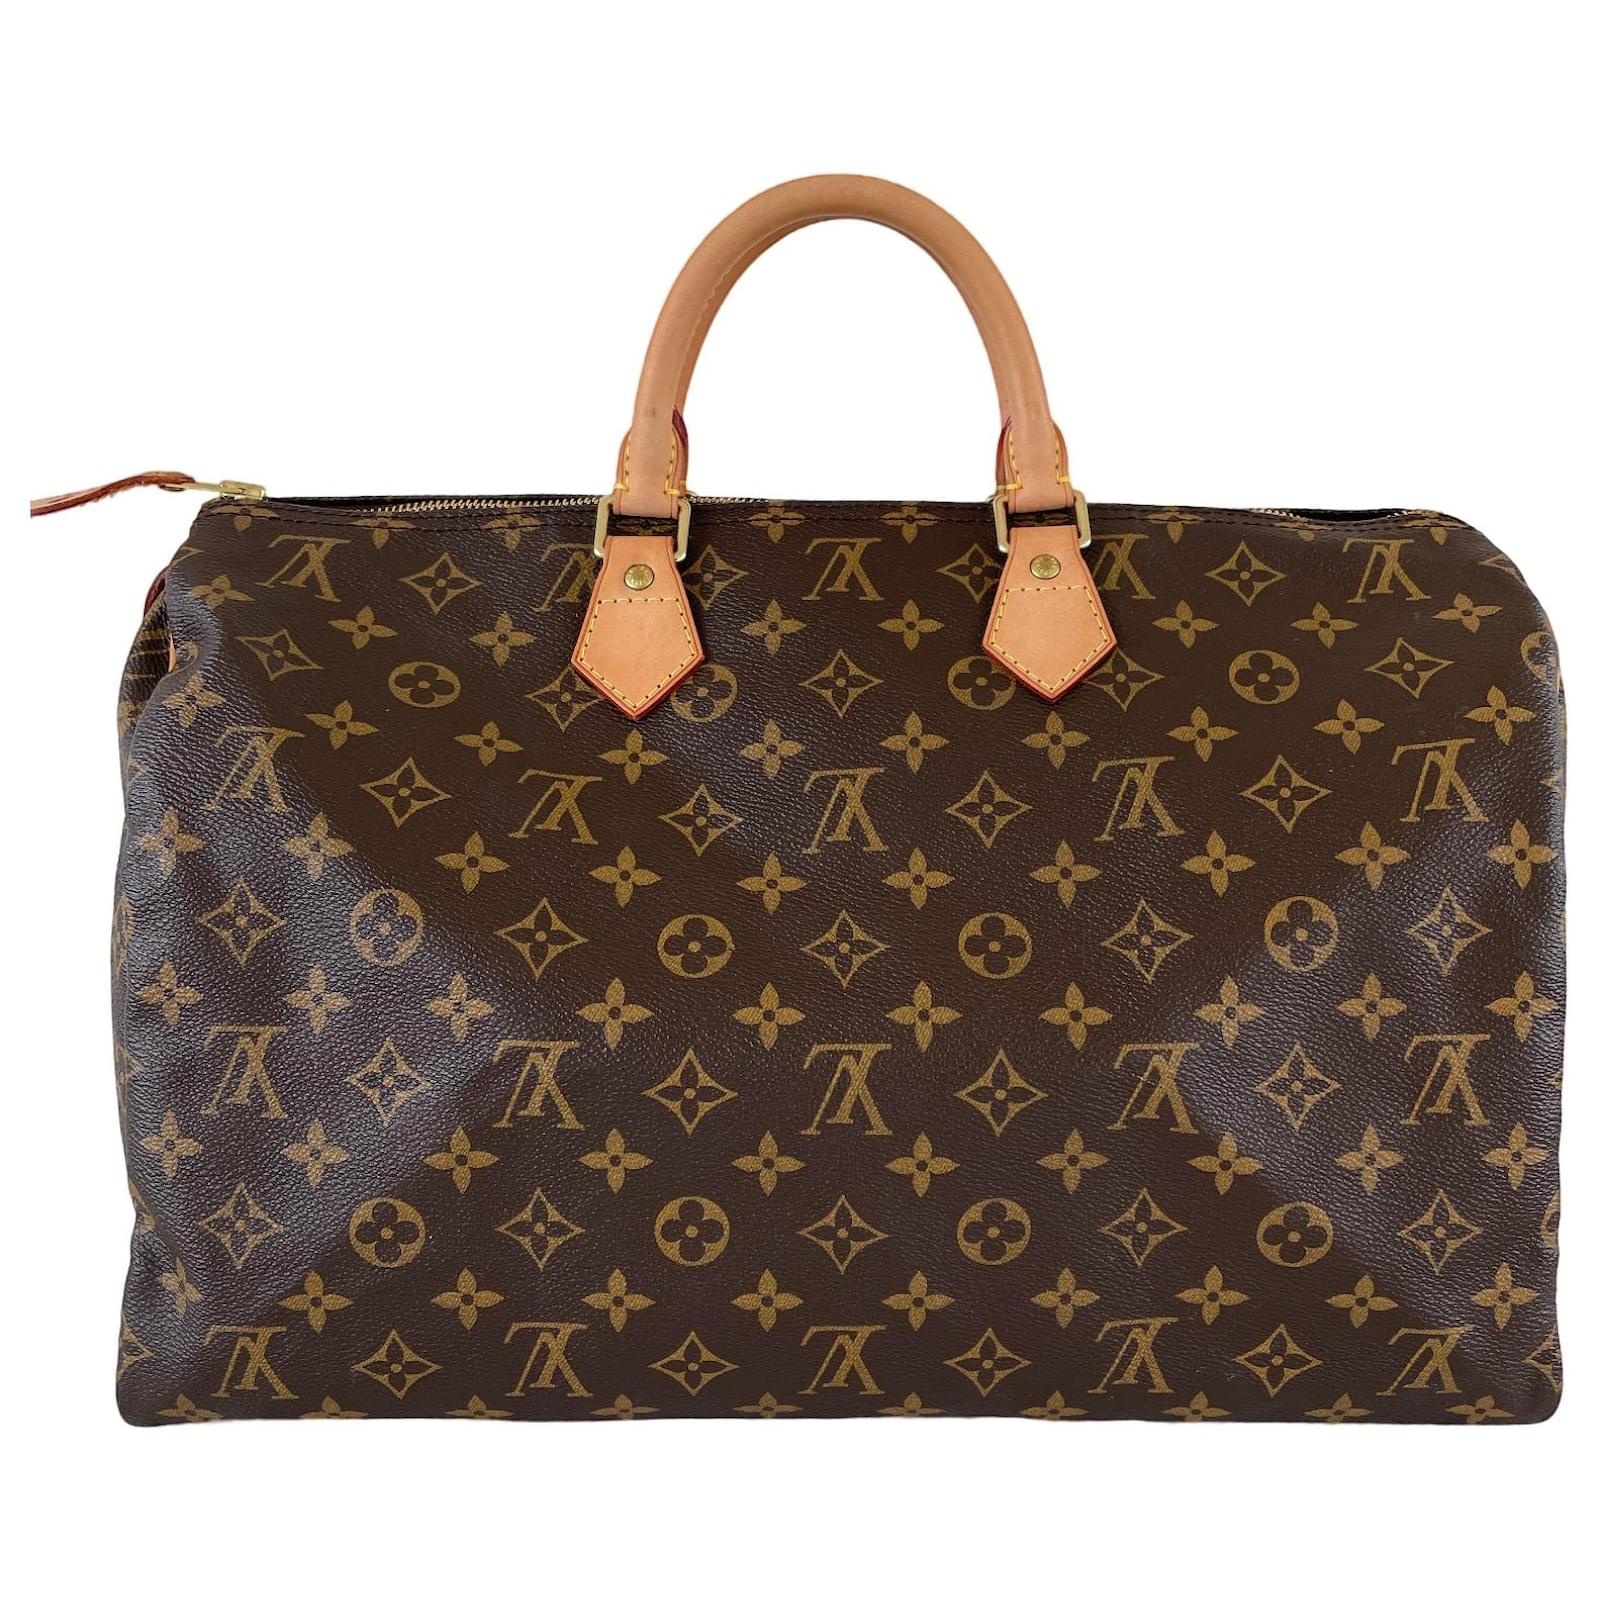 Speedy 40 Vintage bag in brown monogram canvas Louis Vuitton